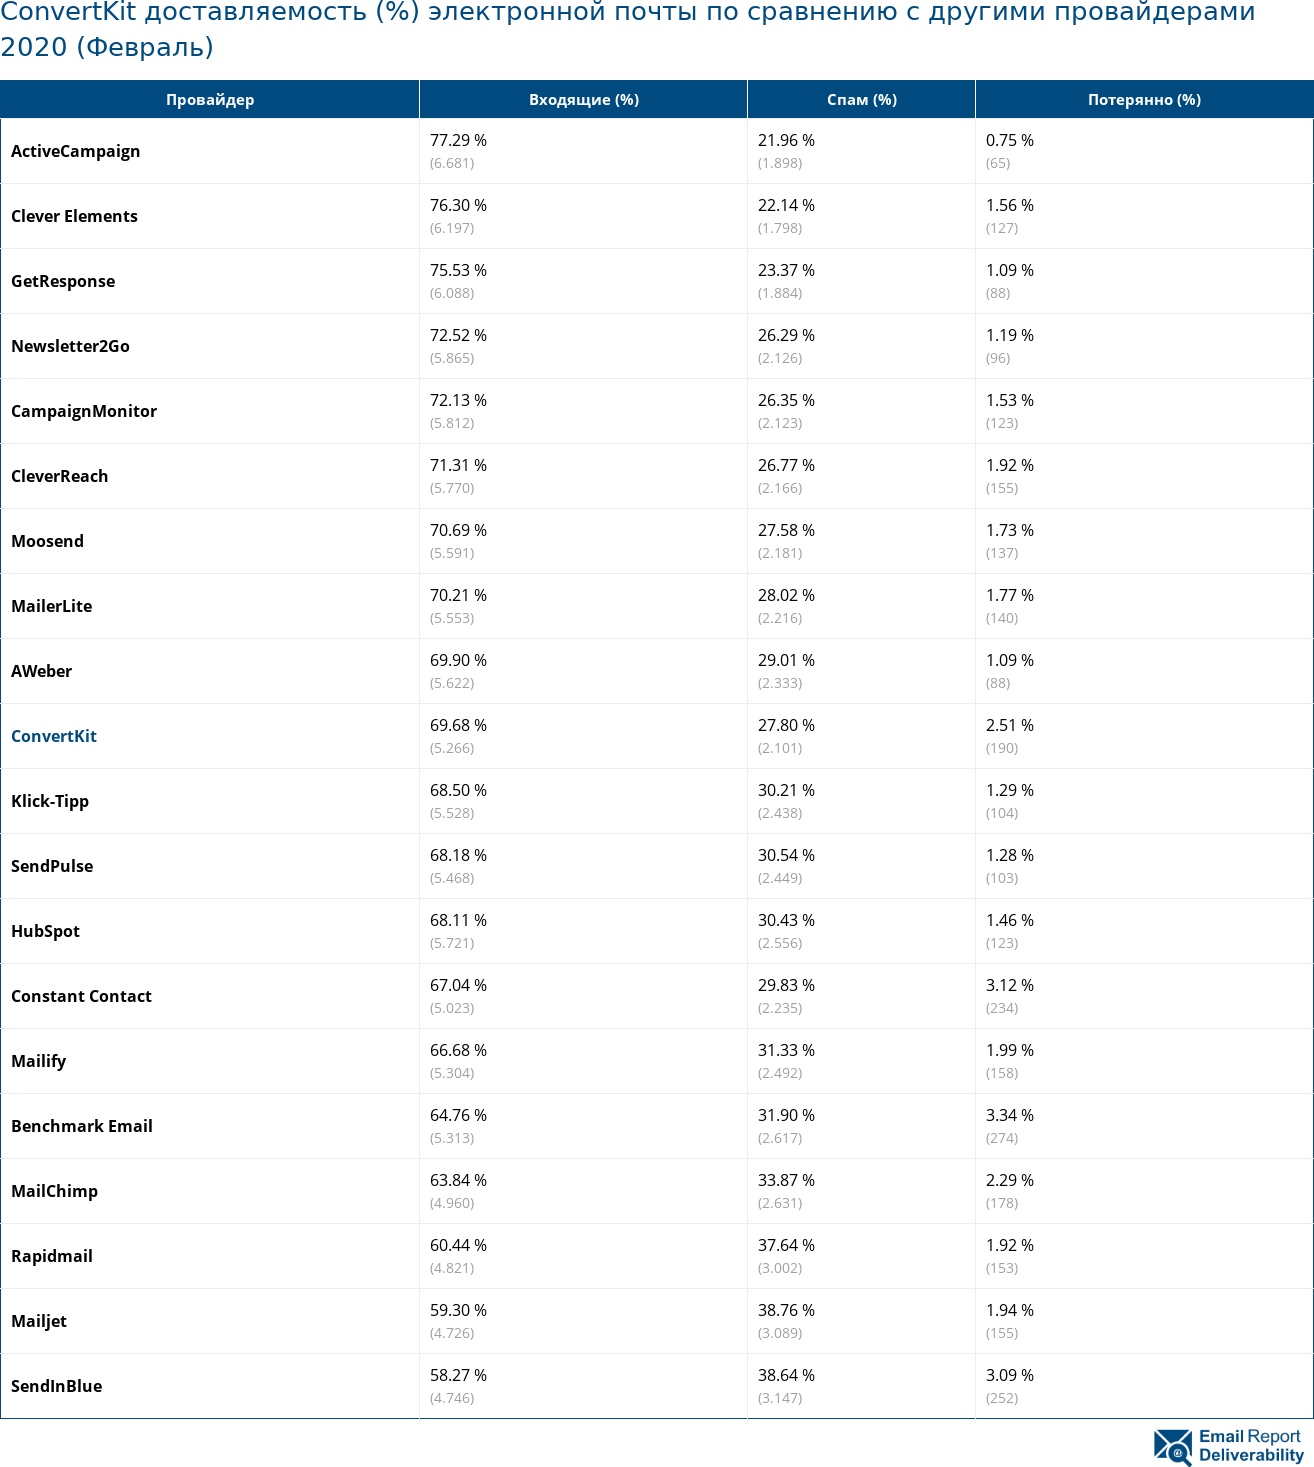 ConvertKit доставляемость (%) электронной почты по сравнению с другими провайдерами 2020 (Февраль)